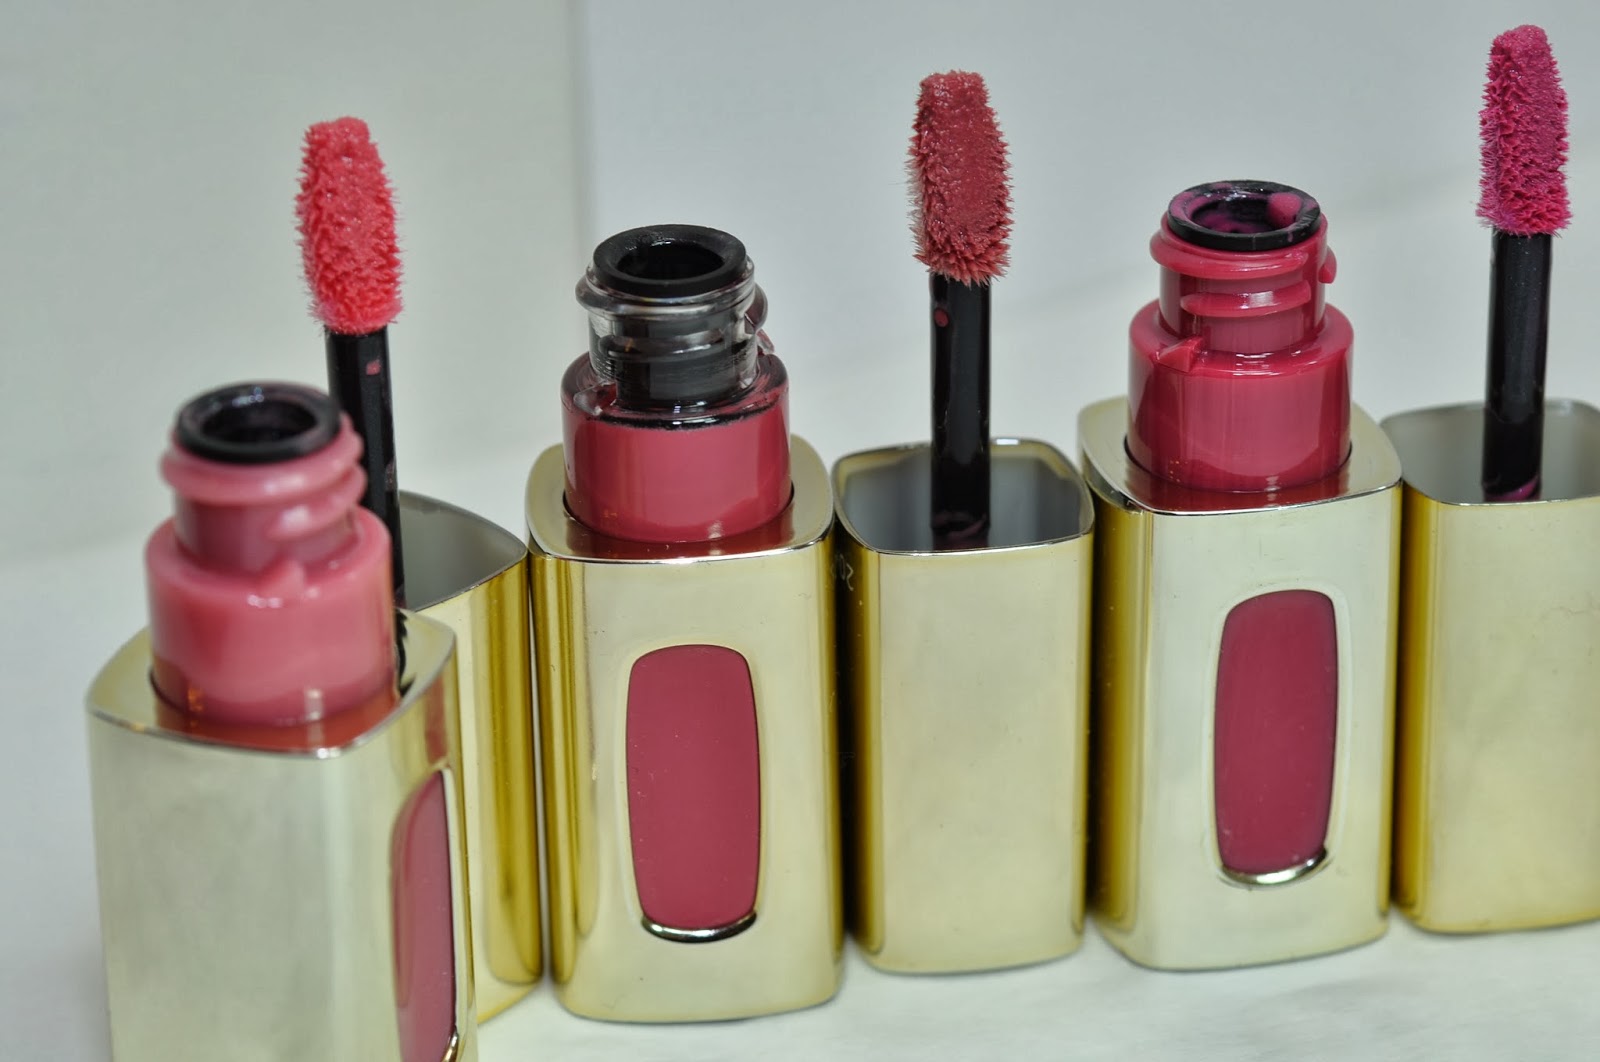 L'Oreal Colour Riche Extraordinaire Liquid Lipstick Swatches